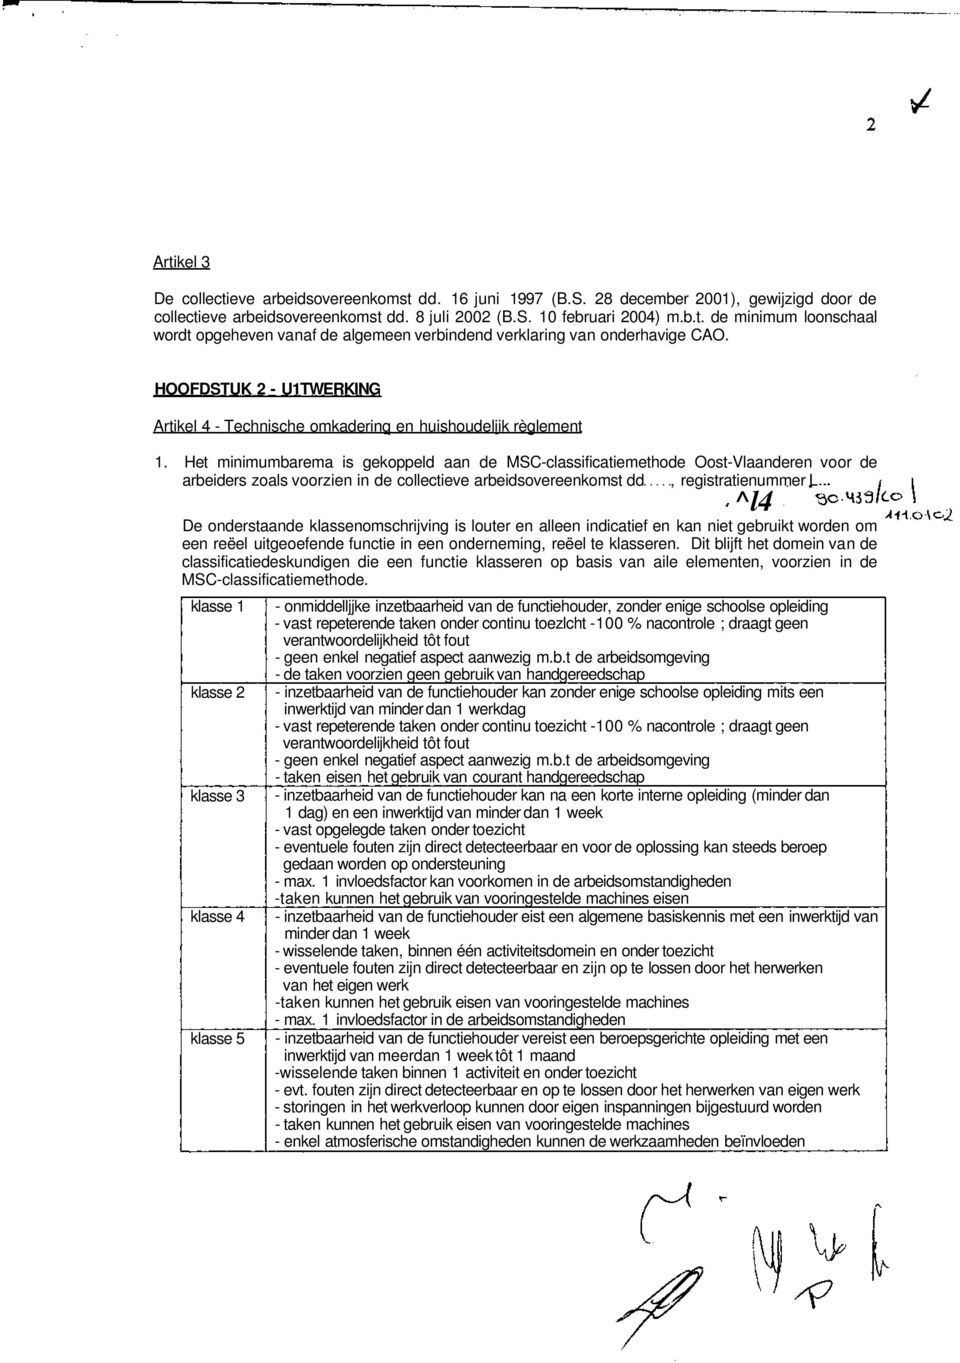 Het minimumbarema is gekoppeld aan de MSC-classificatiemethode Oost-Vlaanderen voor de arbeiders zoals voorzien in de collectieve arbeidsovereenkomst dd, registratienummer L ^l4 De onderstaande